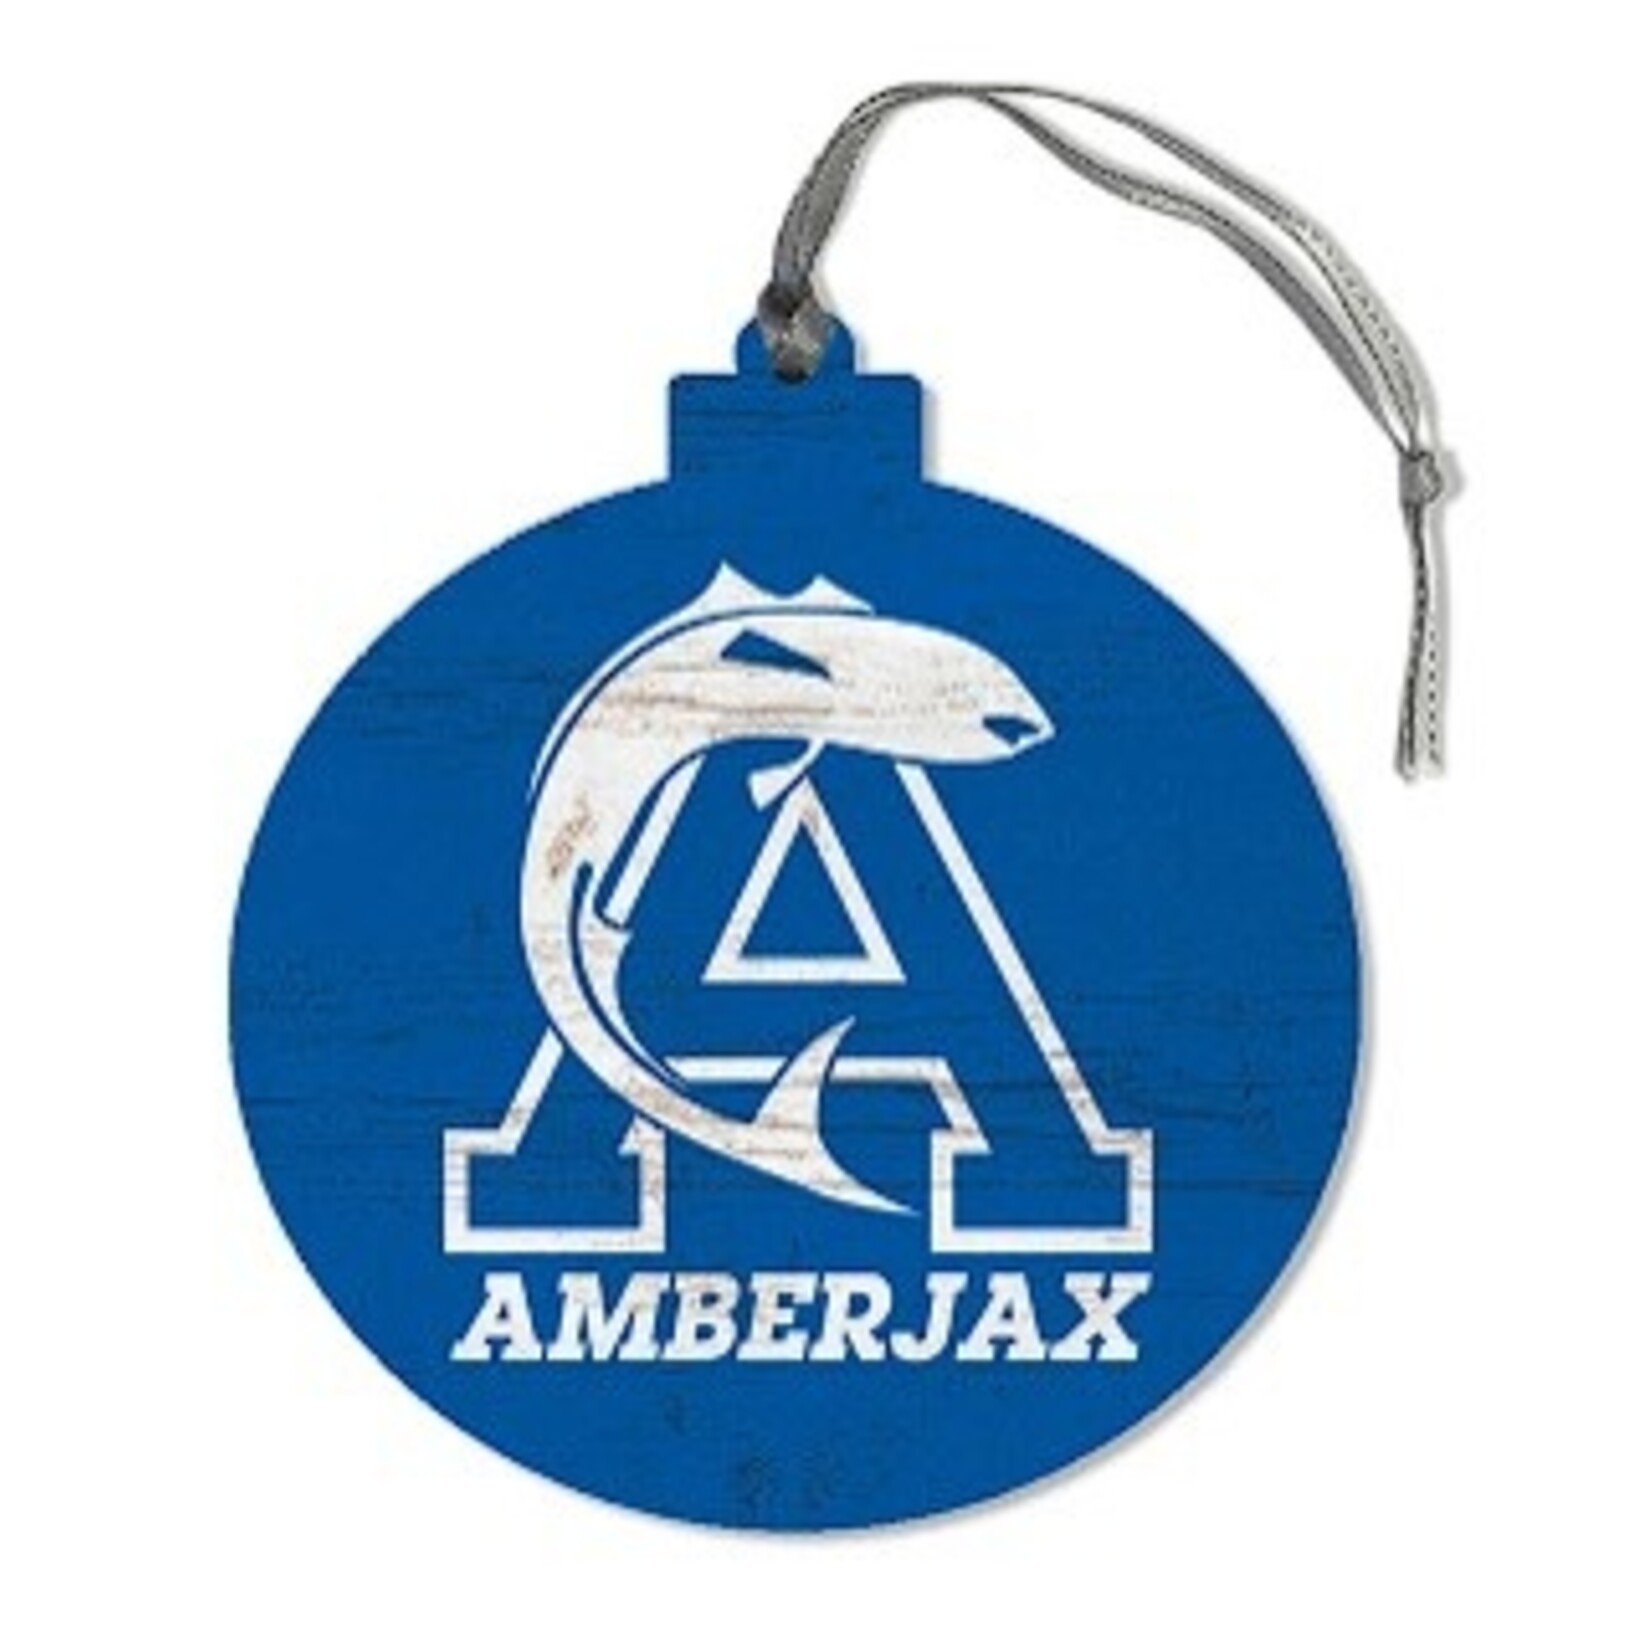 Amberjax Amberjax Wooden Ornament